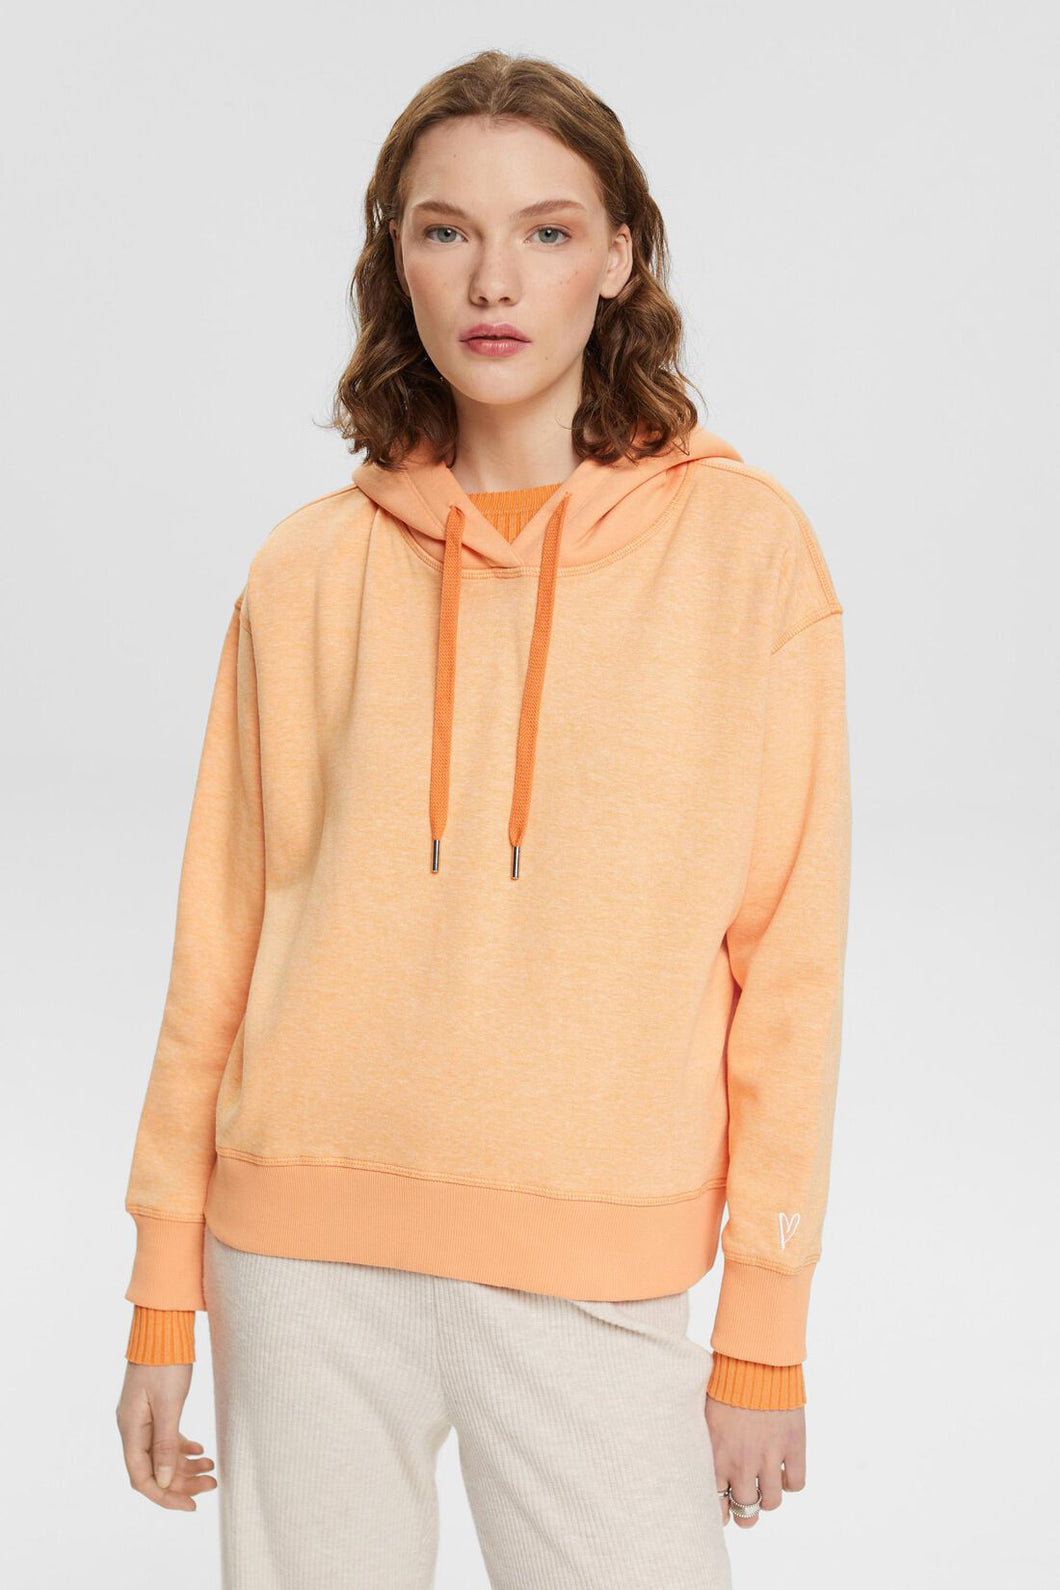 Esprit Hooded Sweatshirt - Style 013EE1J304